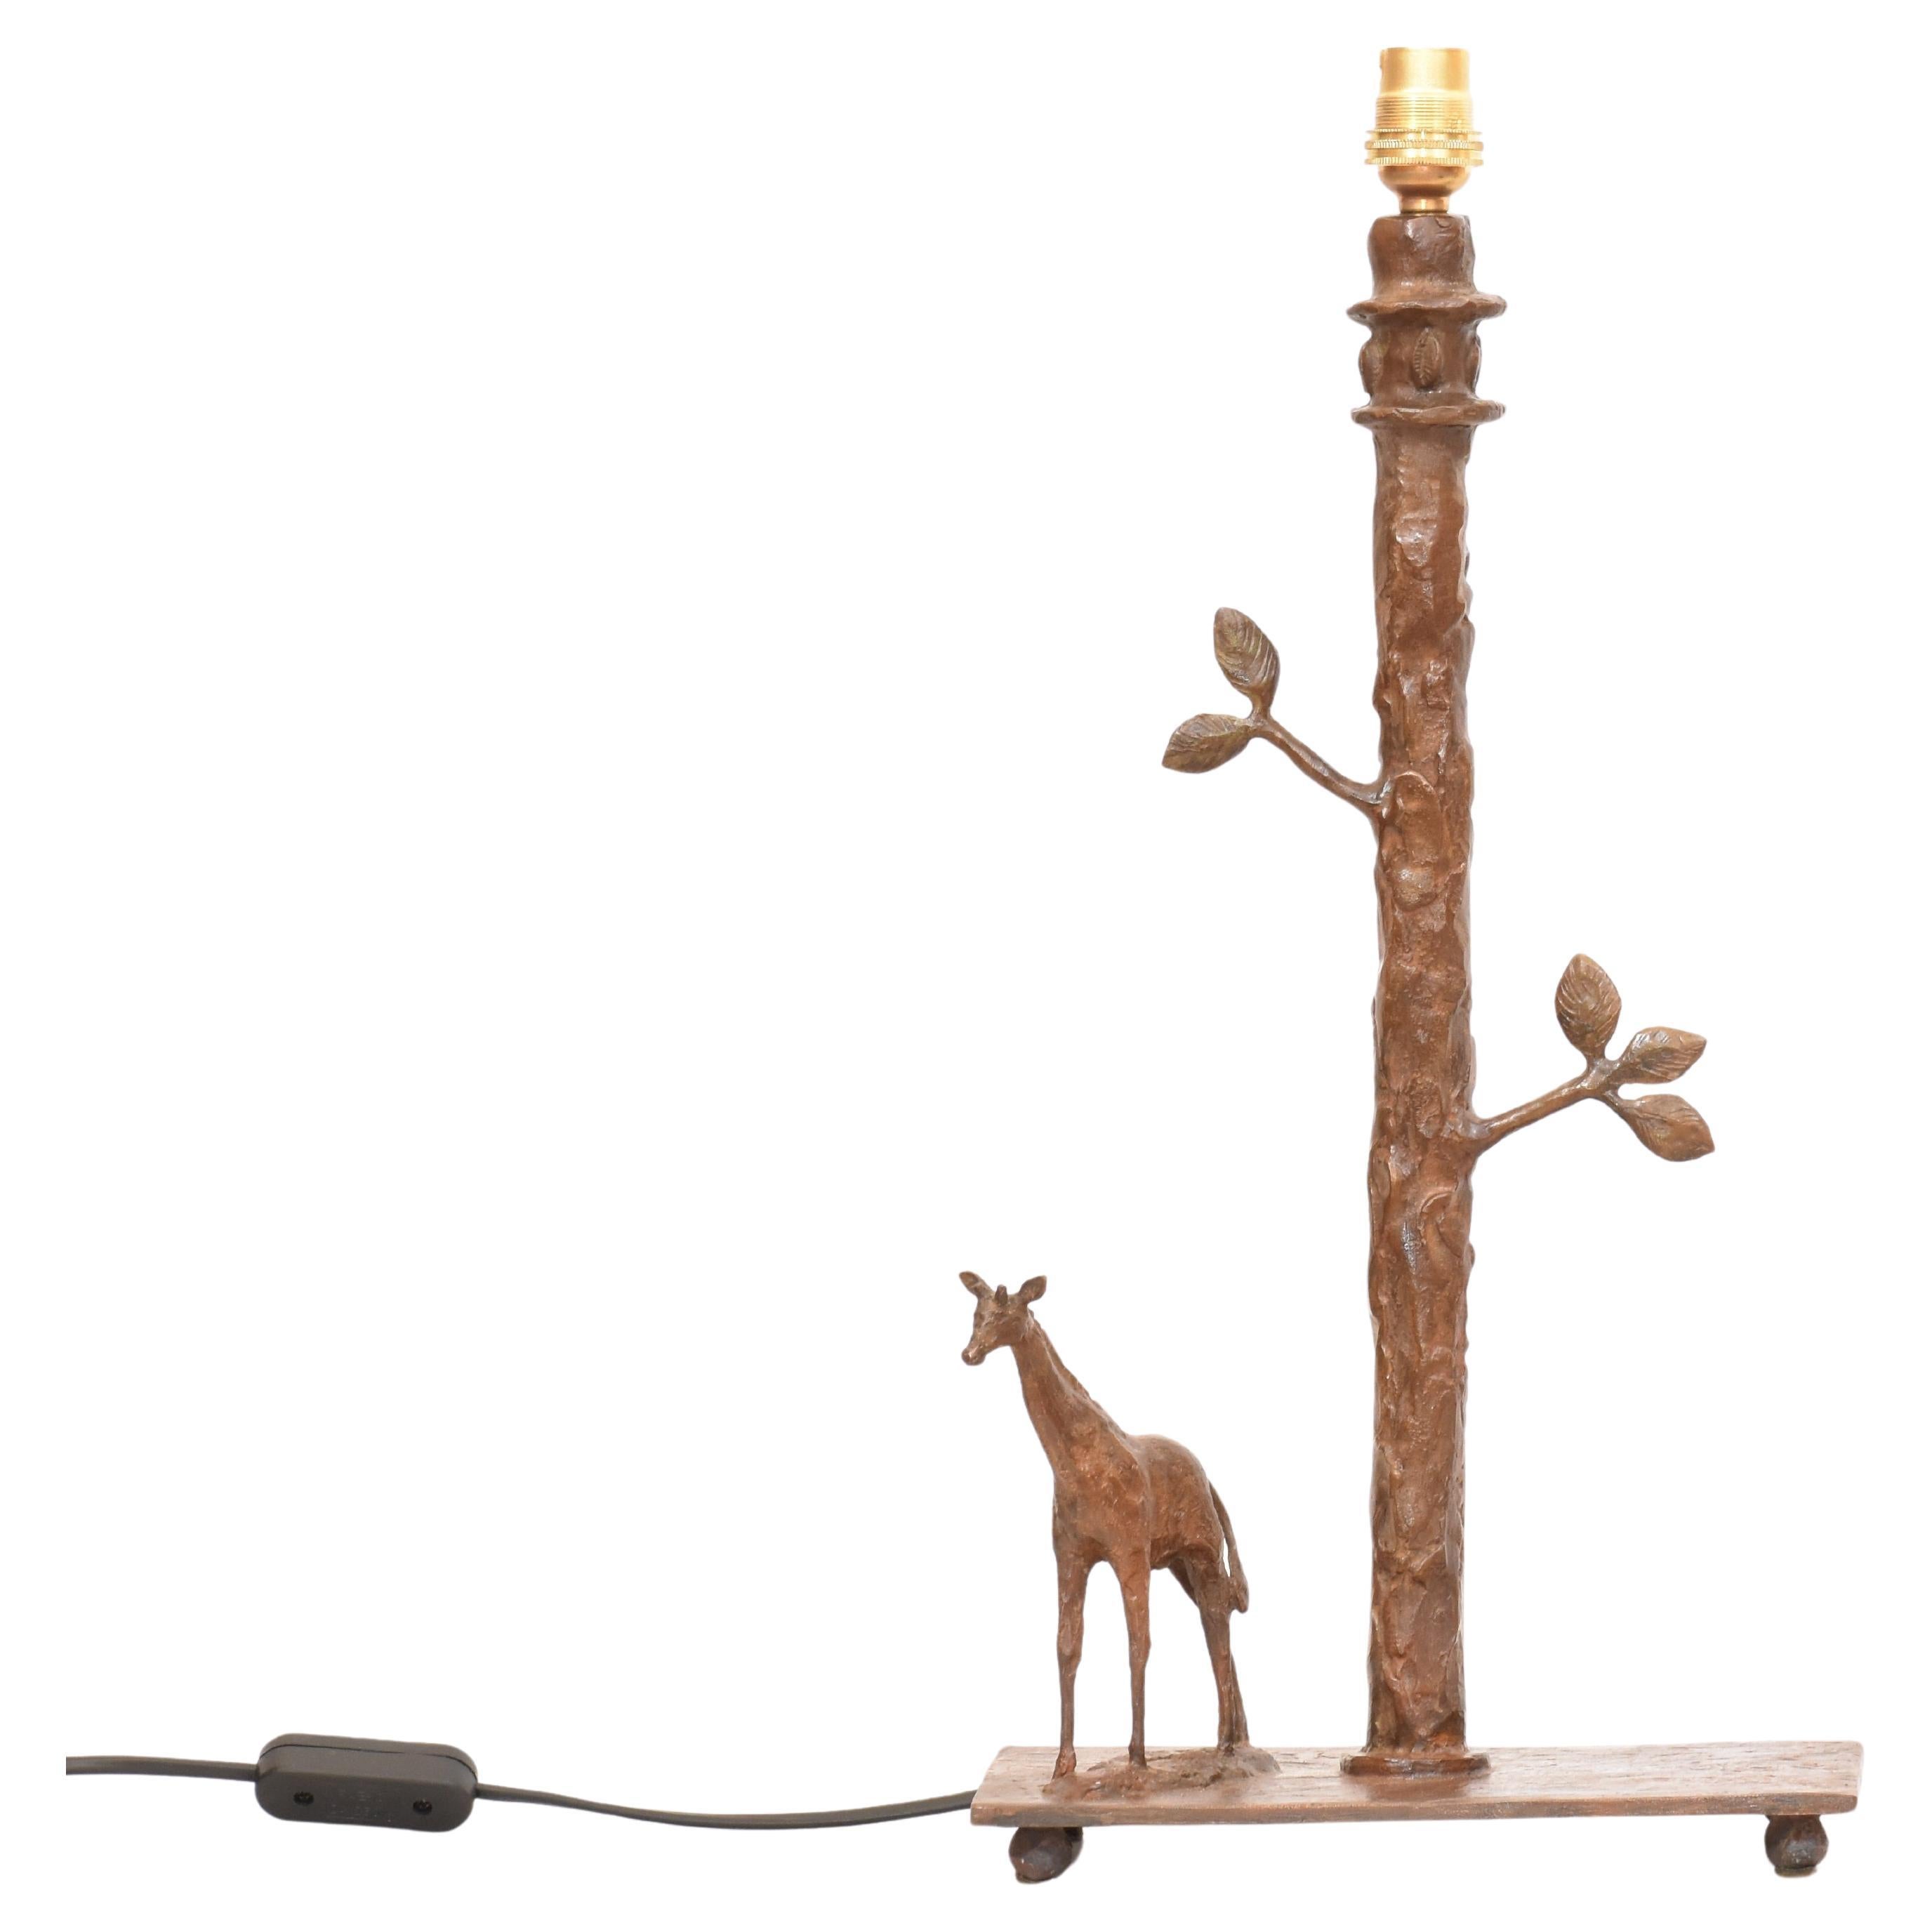 Handgefertigte, skulpturale Giraffen-Tischlampe aus Bronzeguss im Wachsausschmelzverfahren. Handgefertigt - einzeln von Hand geformt, gegossen und fertiggestellt, so dass jedes Stück ein Unikat ist.

Höhe 41 cm (einschließlich Messingleuchte, ohne